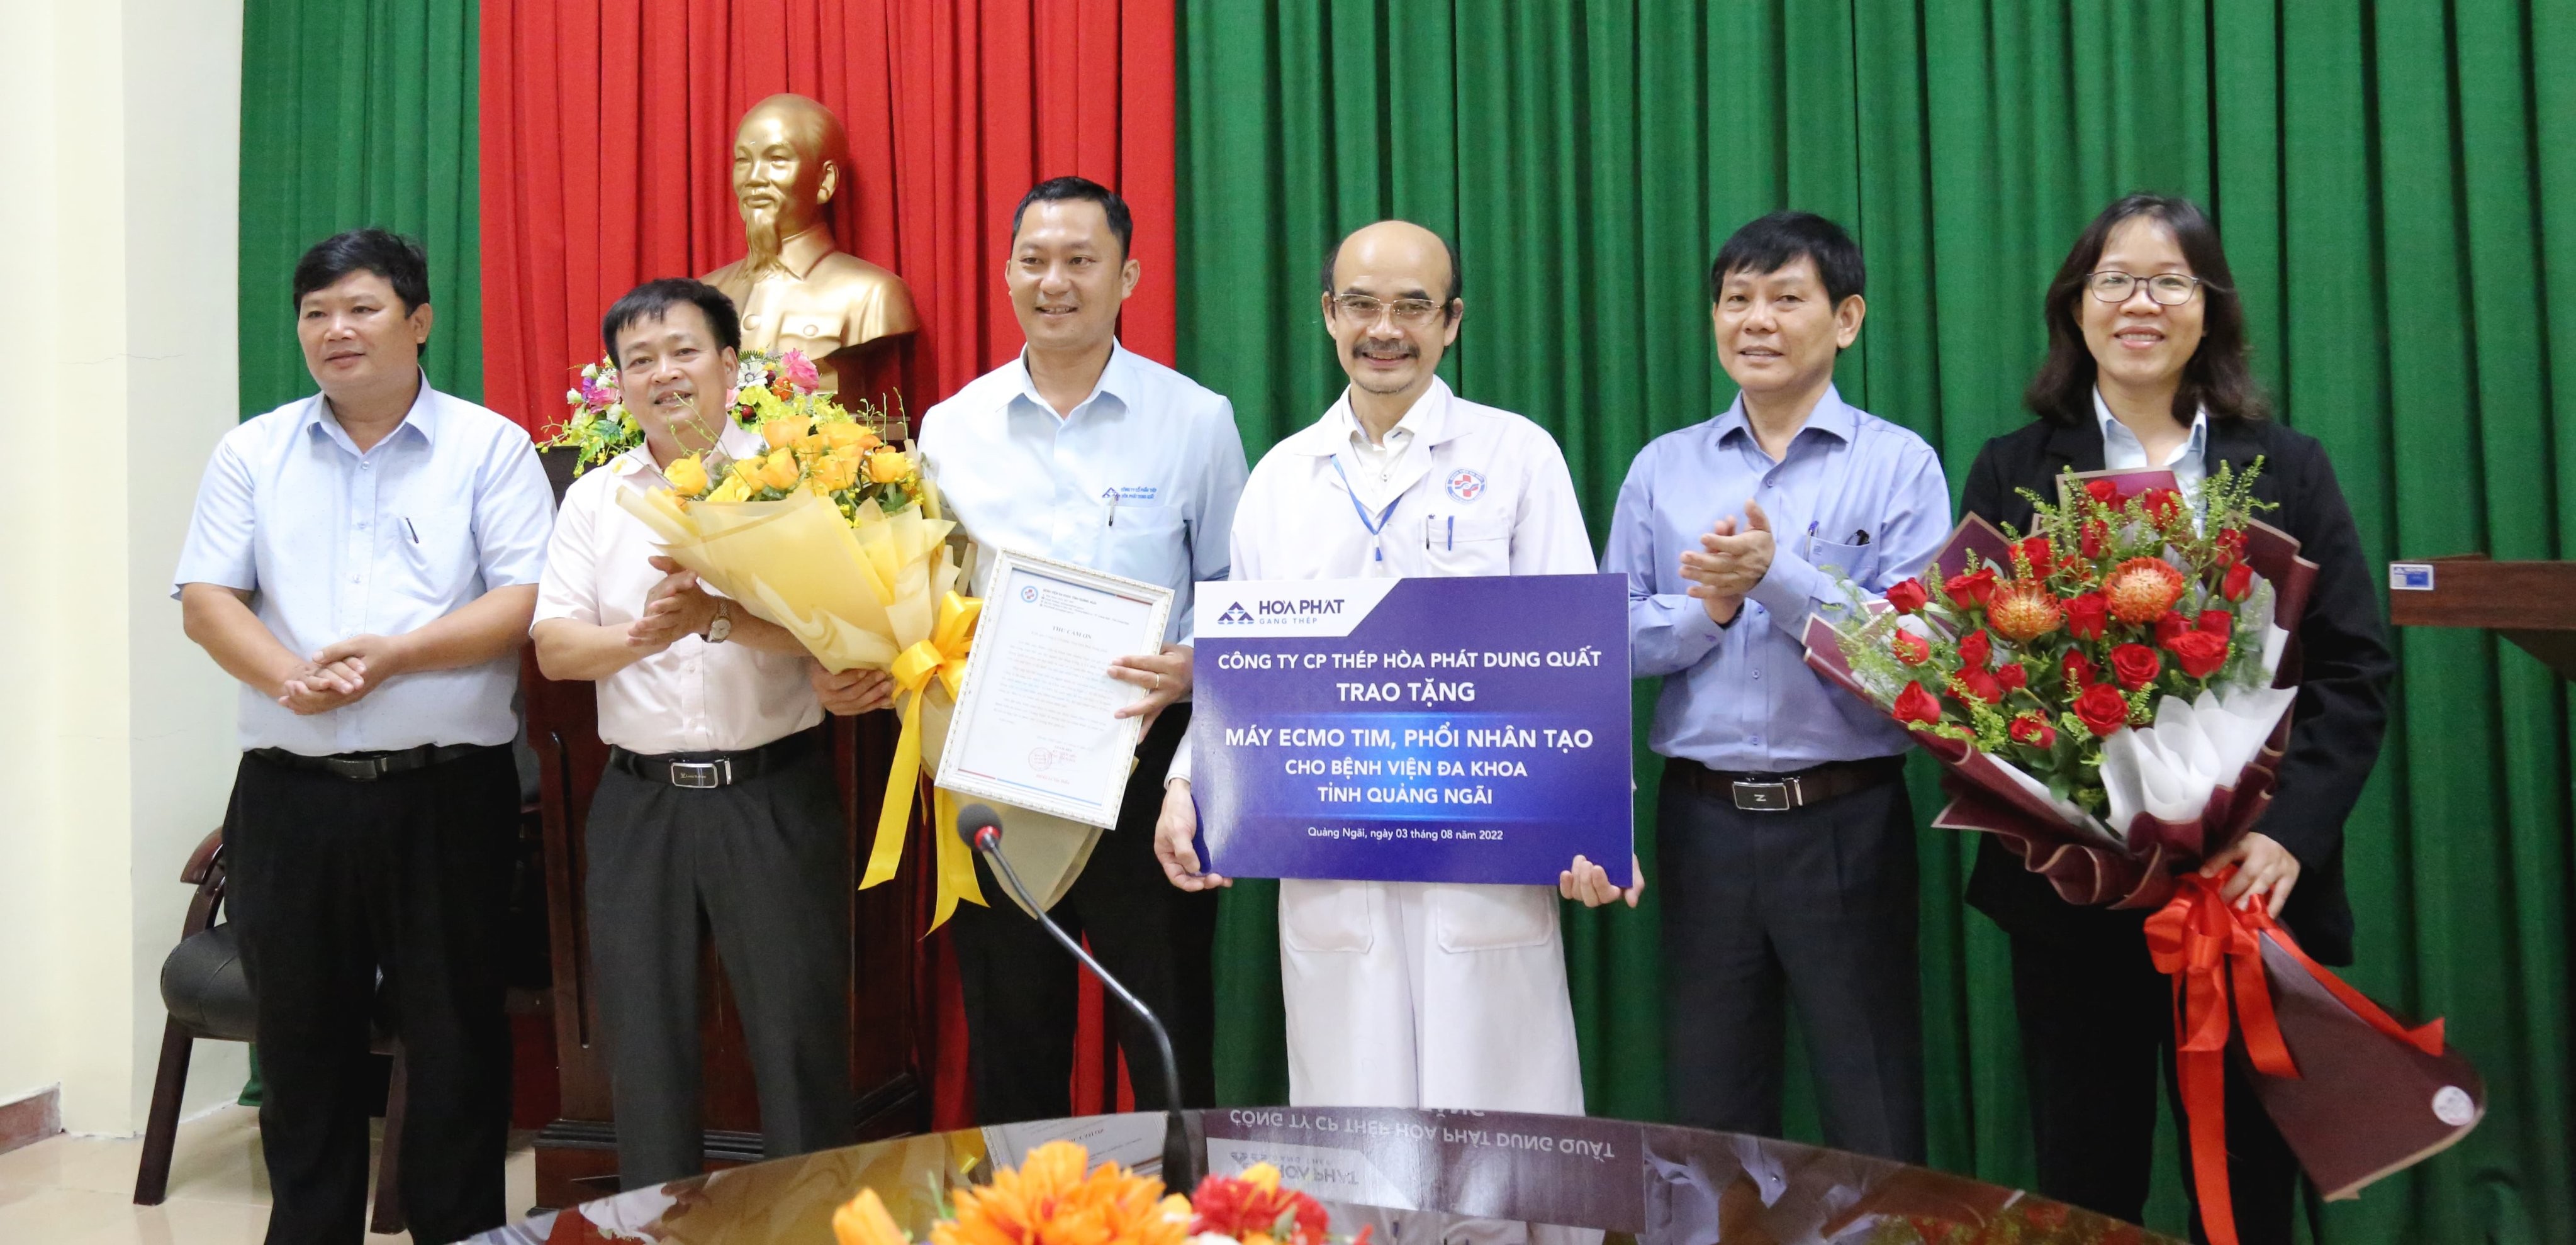 Hòa Phát trao tặng máy ECMO trị giá 2,8 tỷ đồng cho Bệnh viện Đa khoa tỉnh Quảng Ngãi